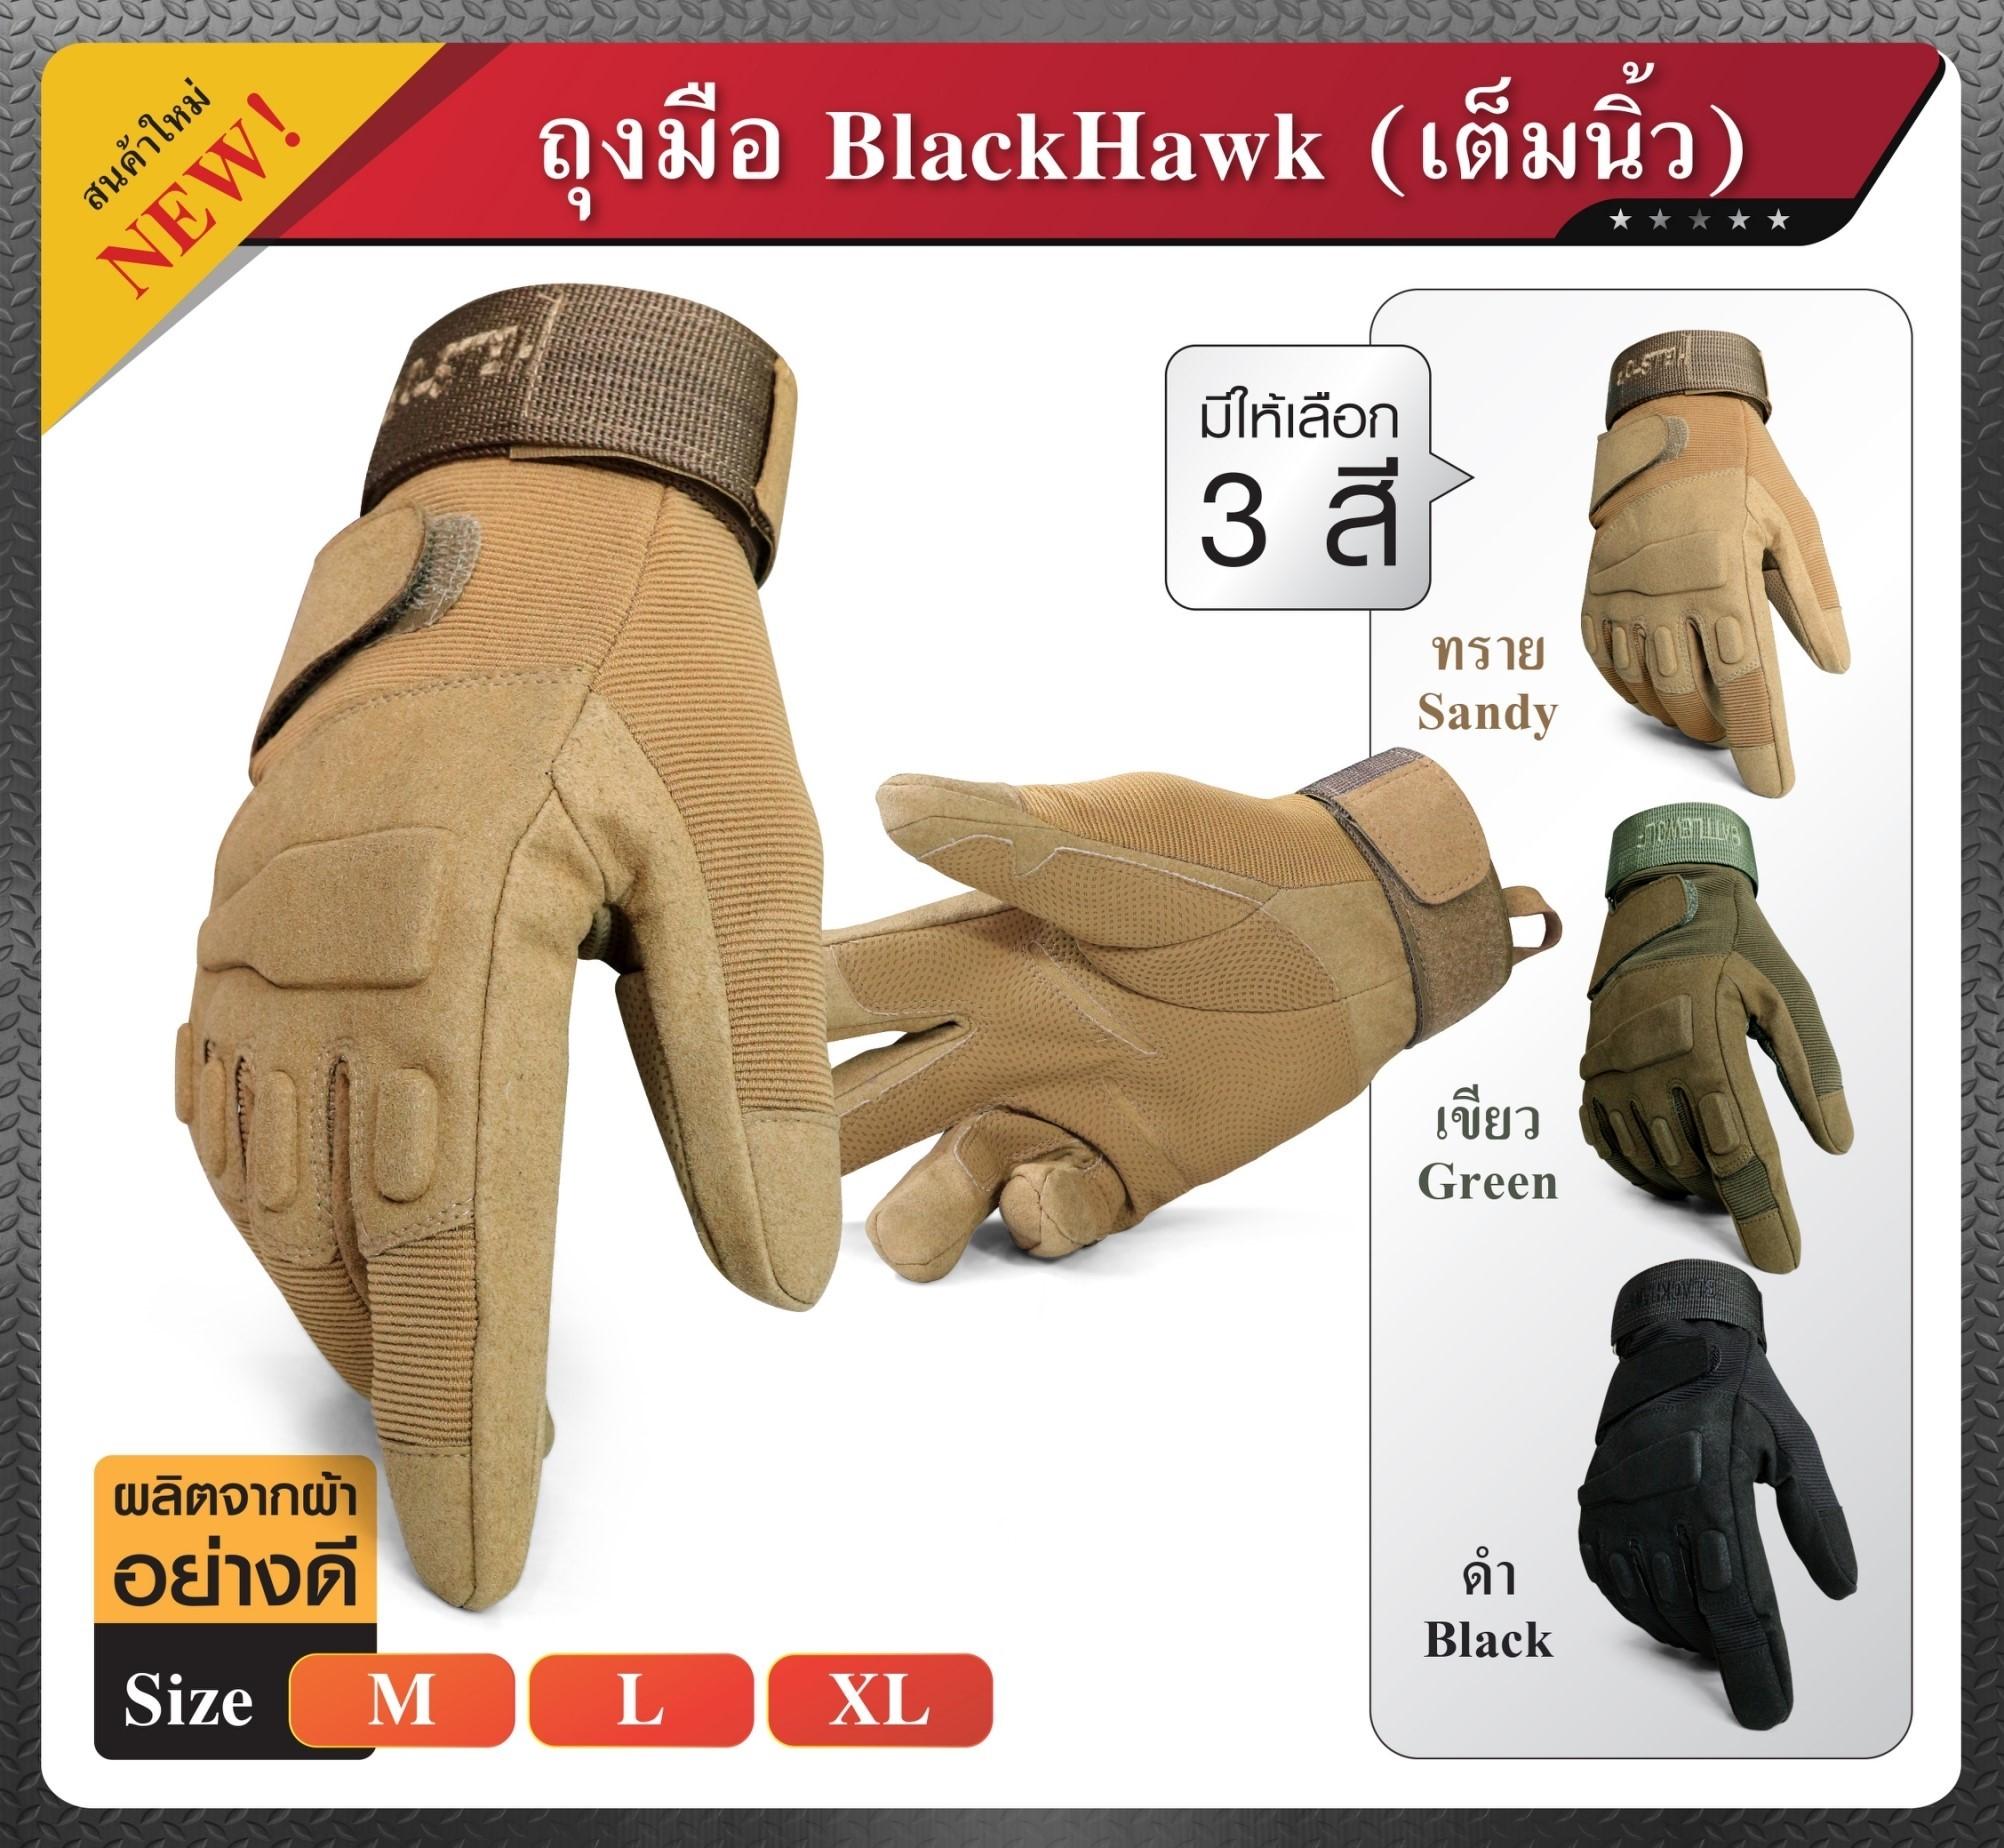 ถุงมือ BlackHawk แบบเต็มนิ้ว ถุงมือการ์ด ถุงมือขี่มอไซค์ ถุงมือขี่จักรยาน ถุงมือขับบิ๊กไบค์ ถุงมือยุทธวิธี